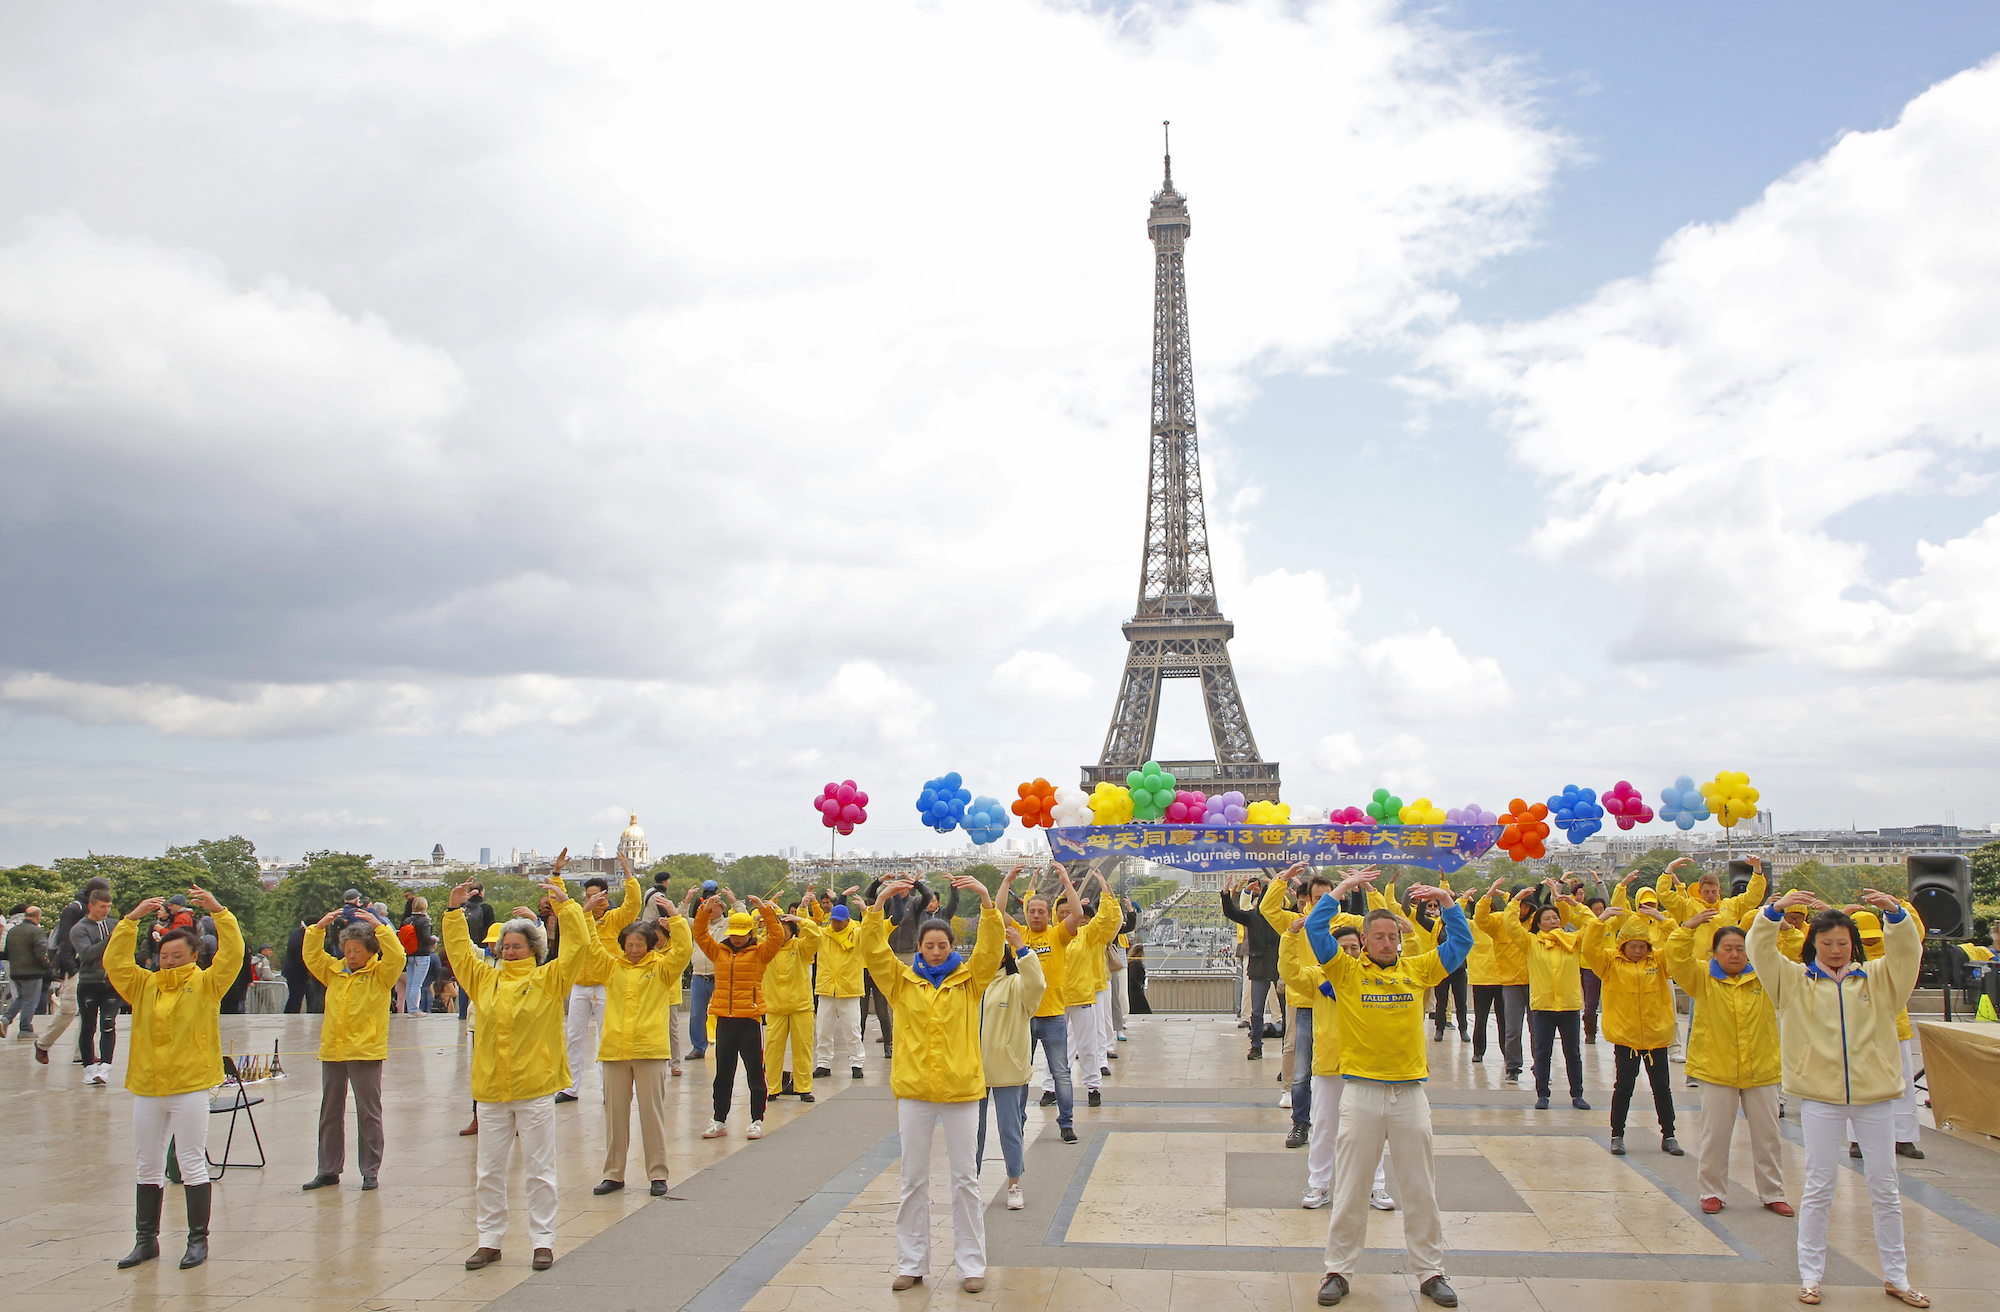 Các học viên Pháp Luân Đại Pháp tại Pháp đang tập bài công pháp thứ hai tại Trocadéro, Paris, nhân kỷ niệm 27 năm Ngày Pháp Luân Đại Pháp Thế giới vào ngày 05/05/2019. (Ảnh: Zhang Le/The Epoch Times)